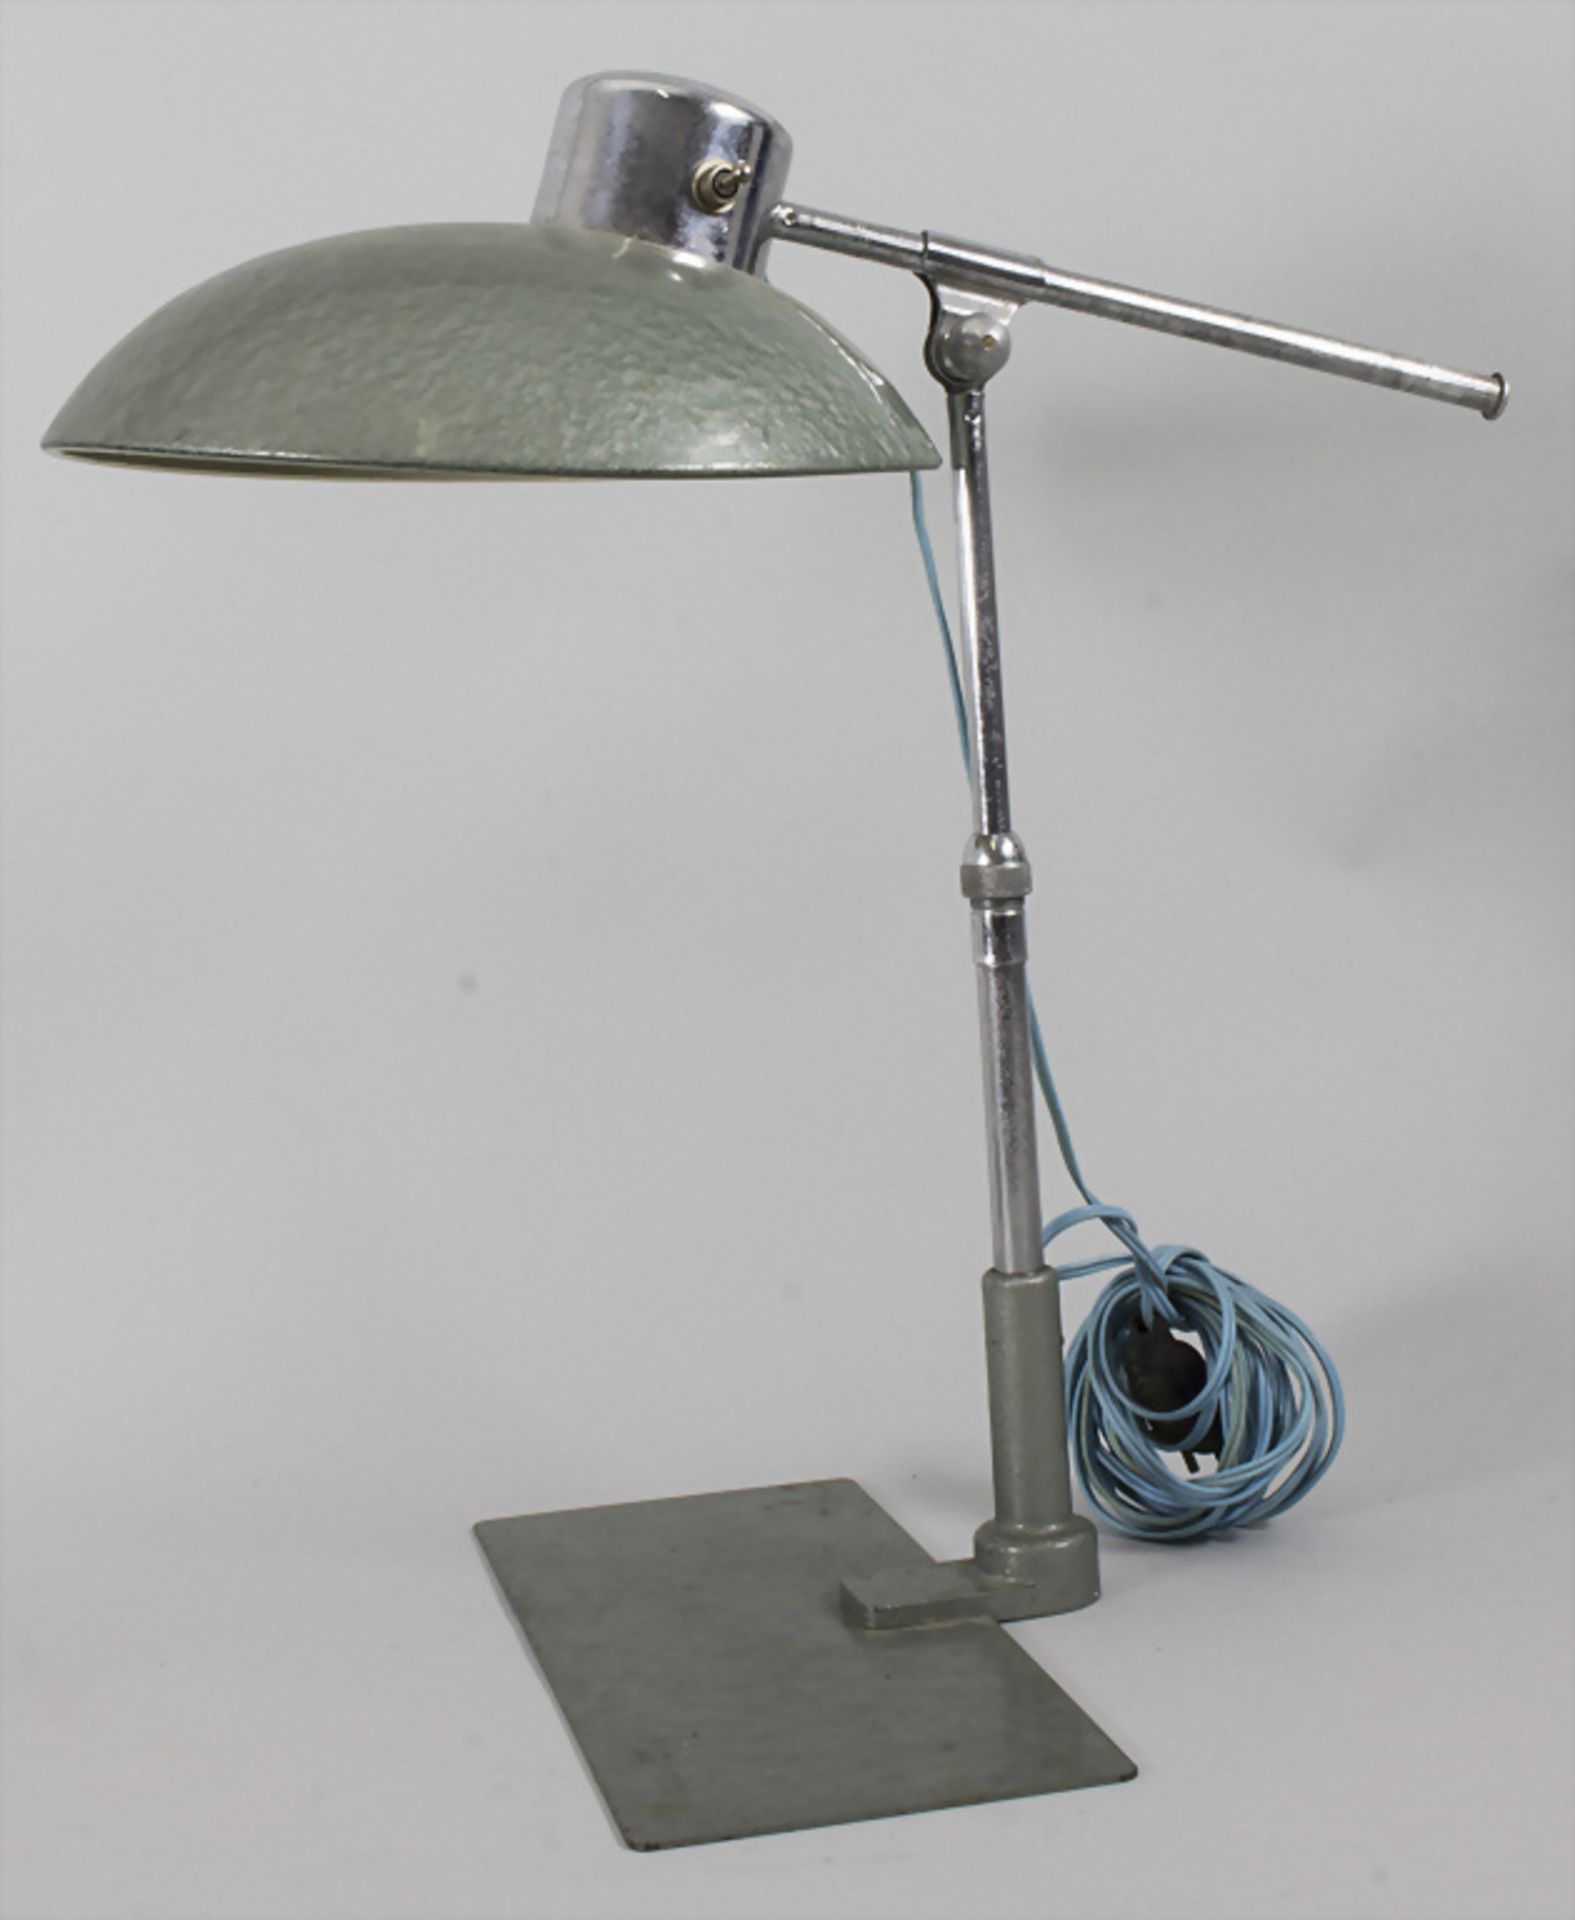 Schreibtischlampe / A desk lamp, Soleré, Paris, um 1950